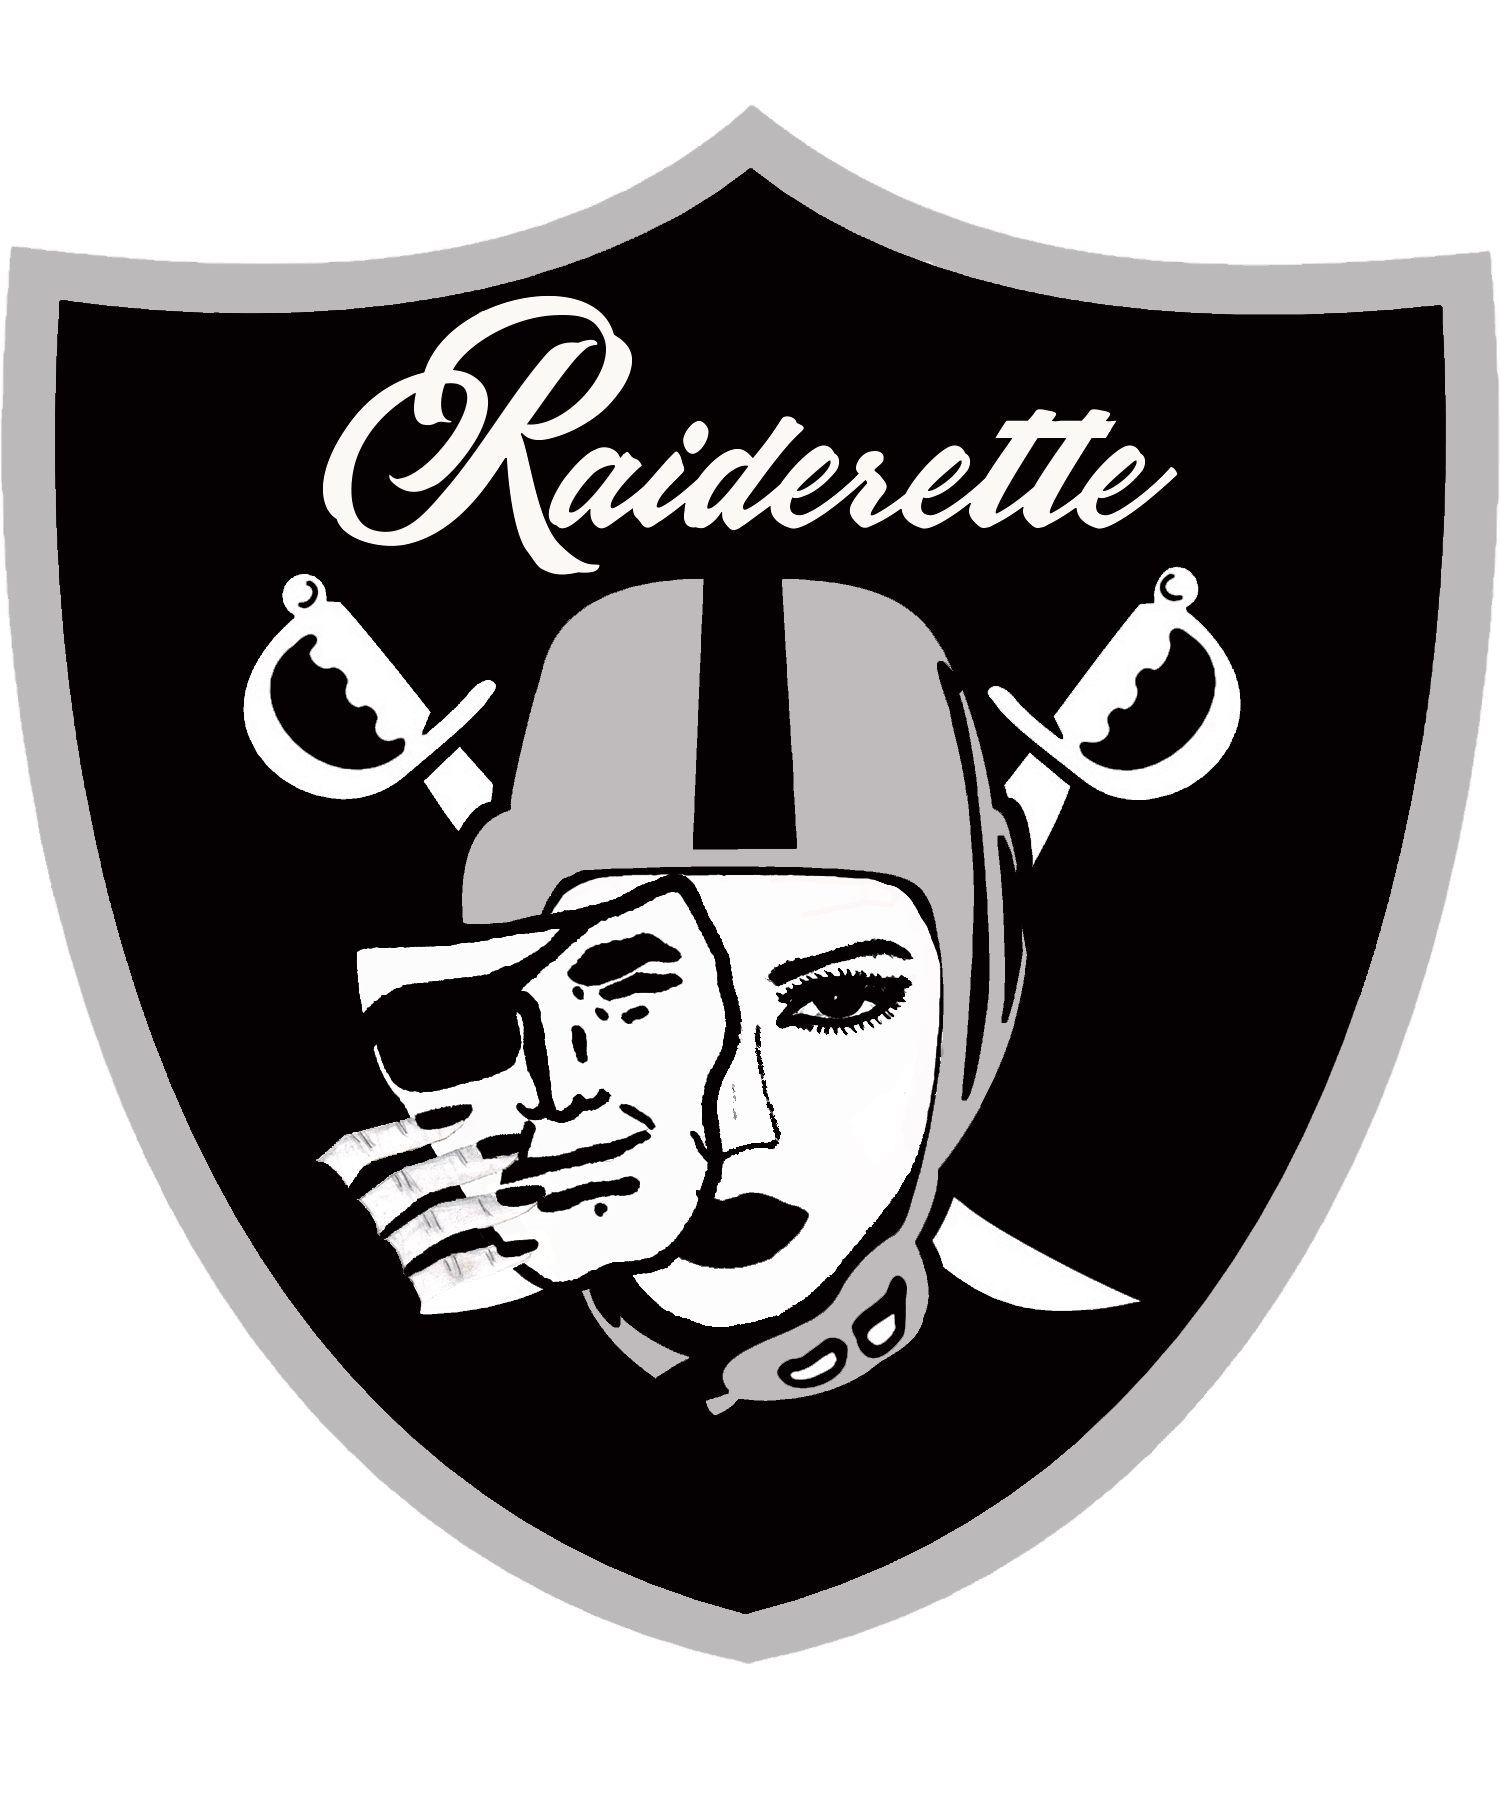 Raiderettes Logo - Raiderette. hynas. Raiders cheerleaders, Raiders football, Nfl